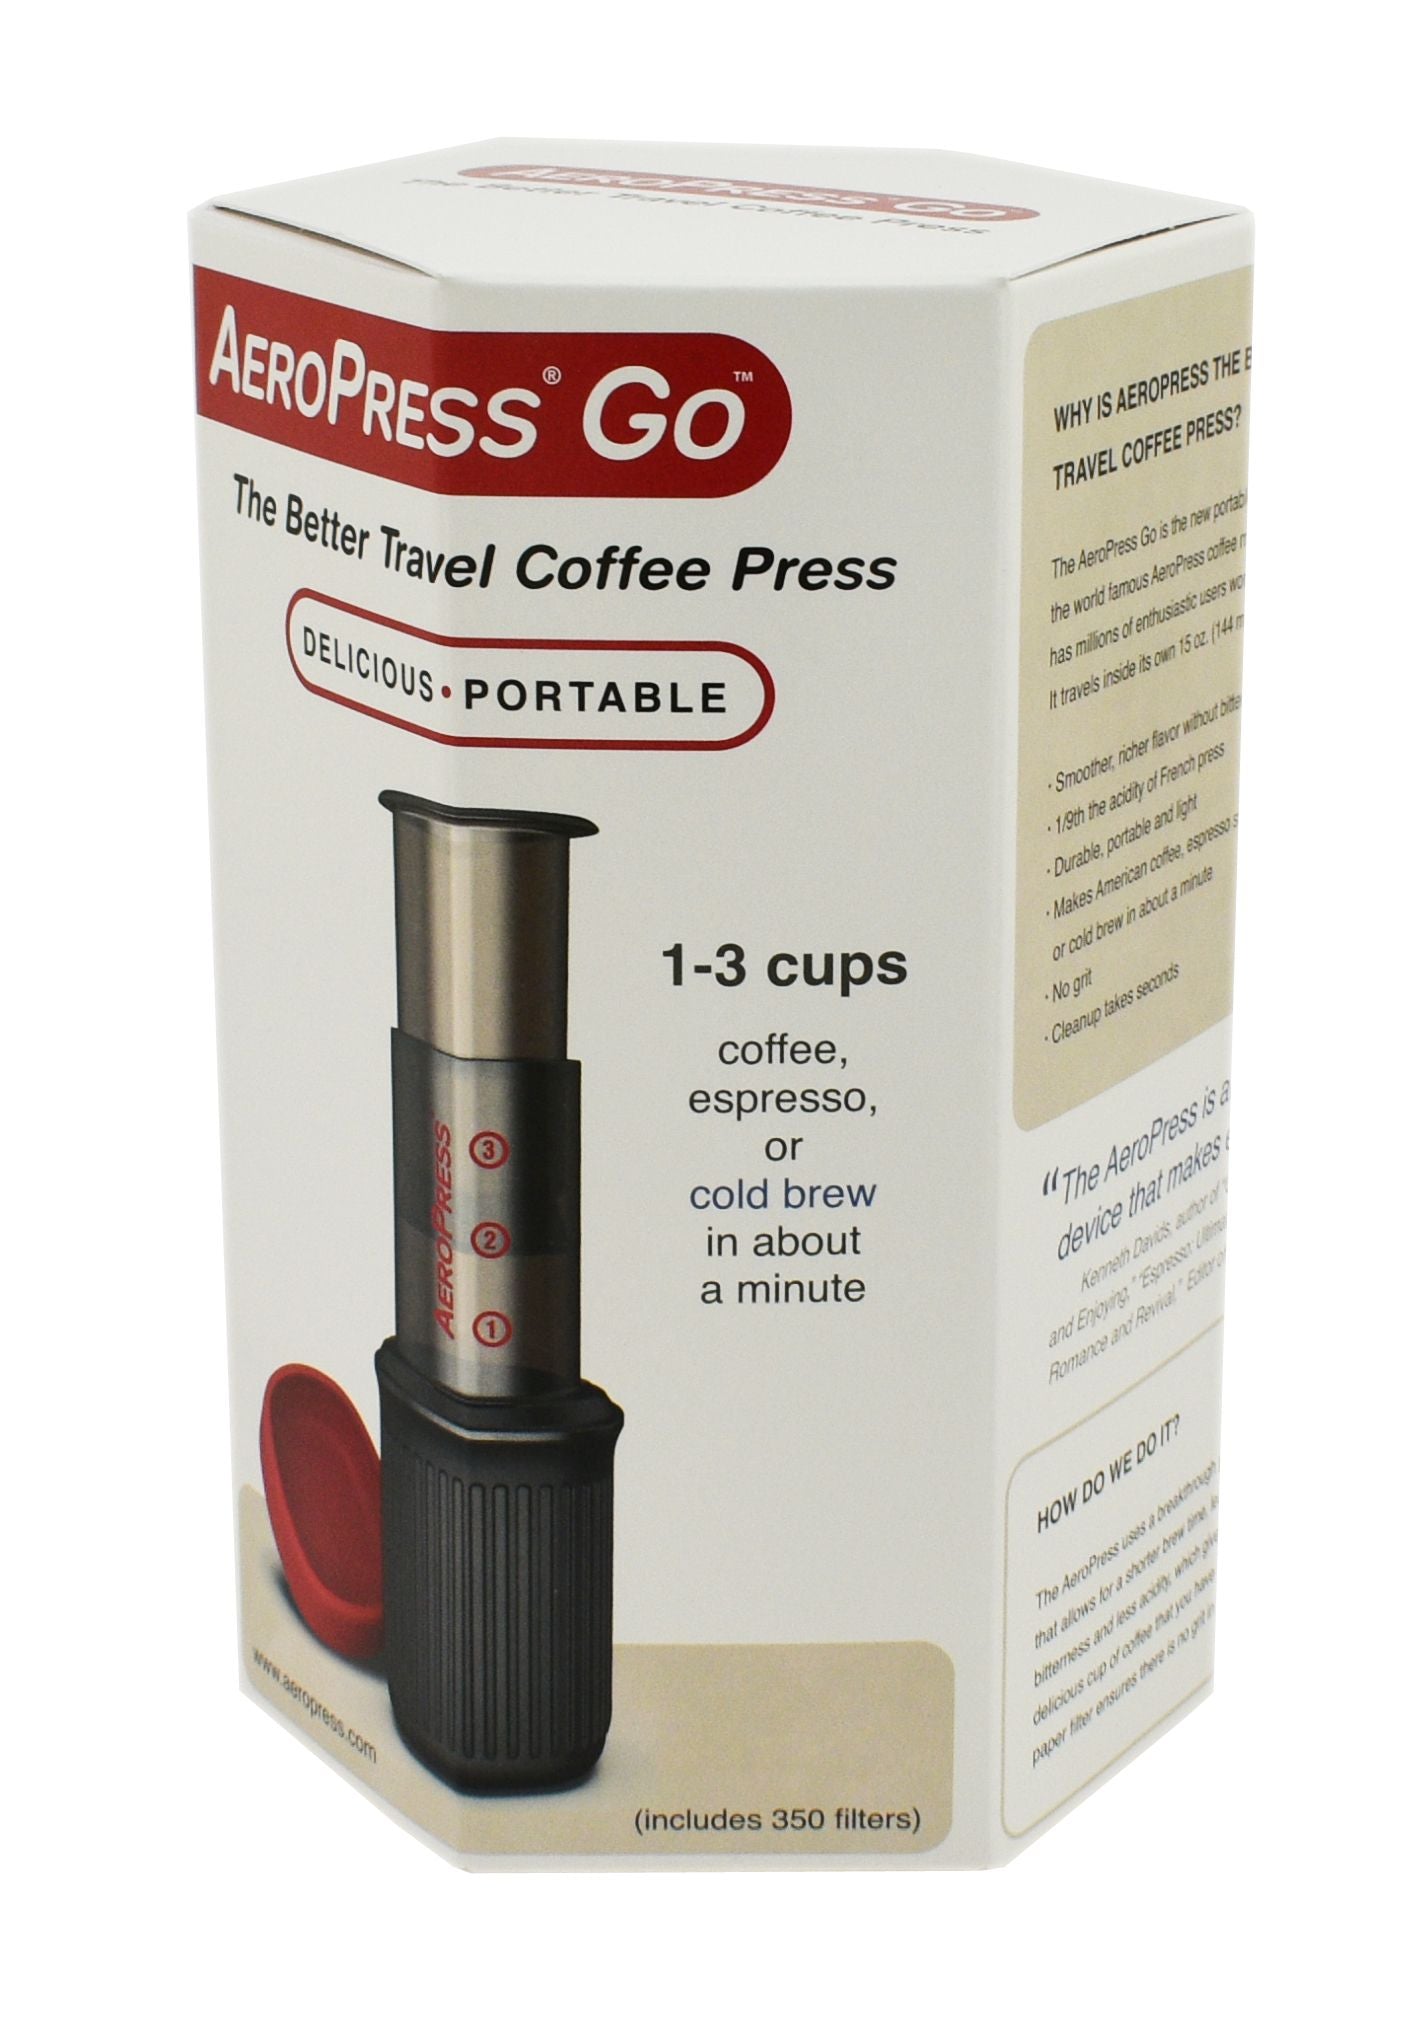 Go Portable Travel Coffee Press, 1-3 Cups - Espresso and Cold Brew